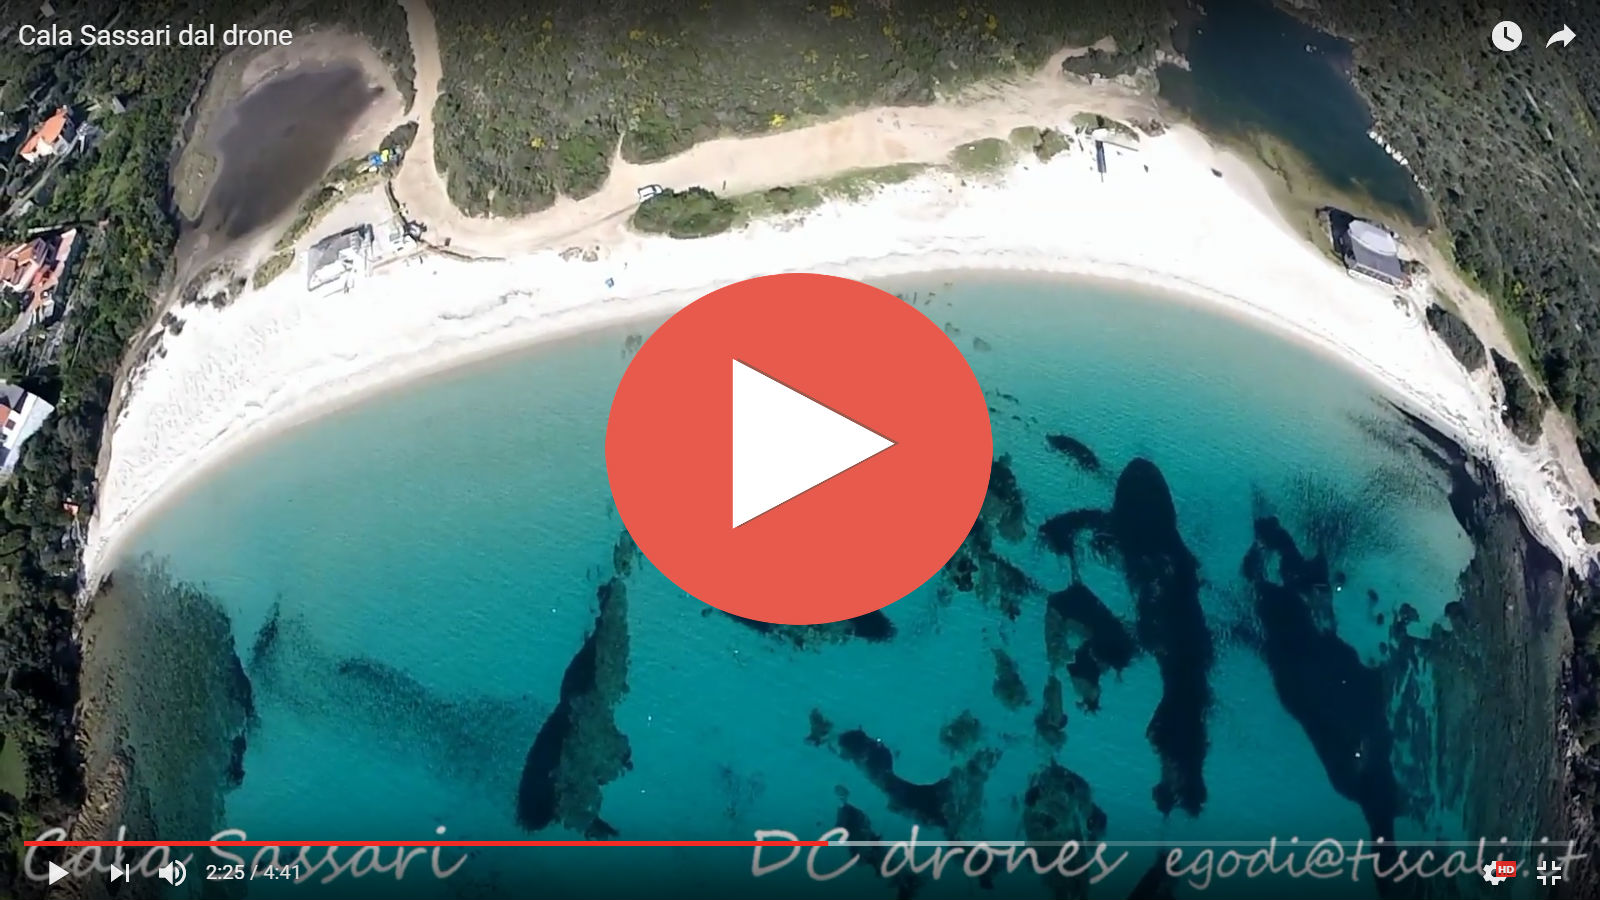 *VIDEO* La spiaggia di Cala Sassari vista dal drone